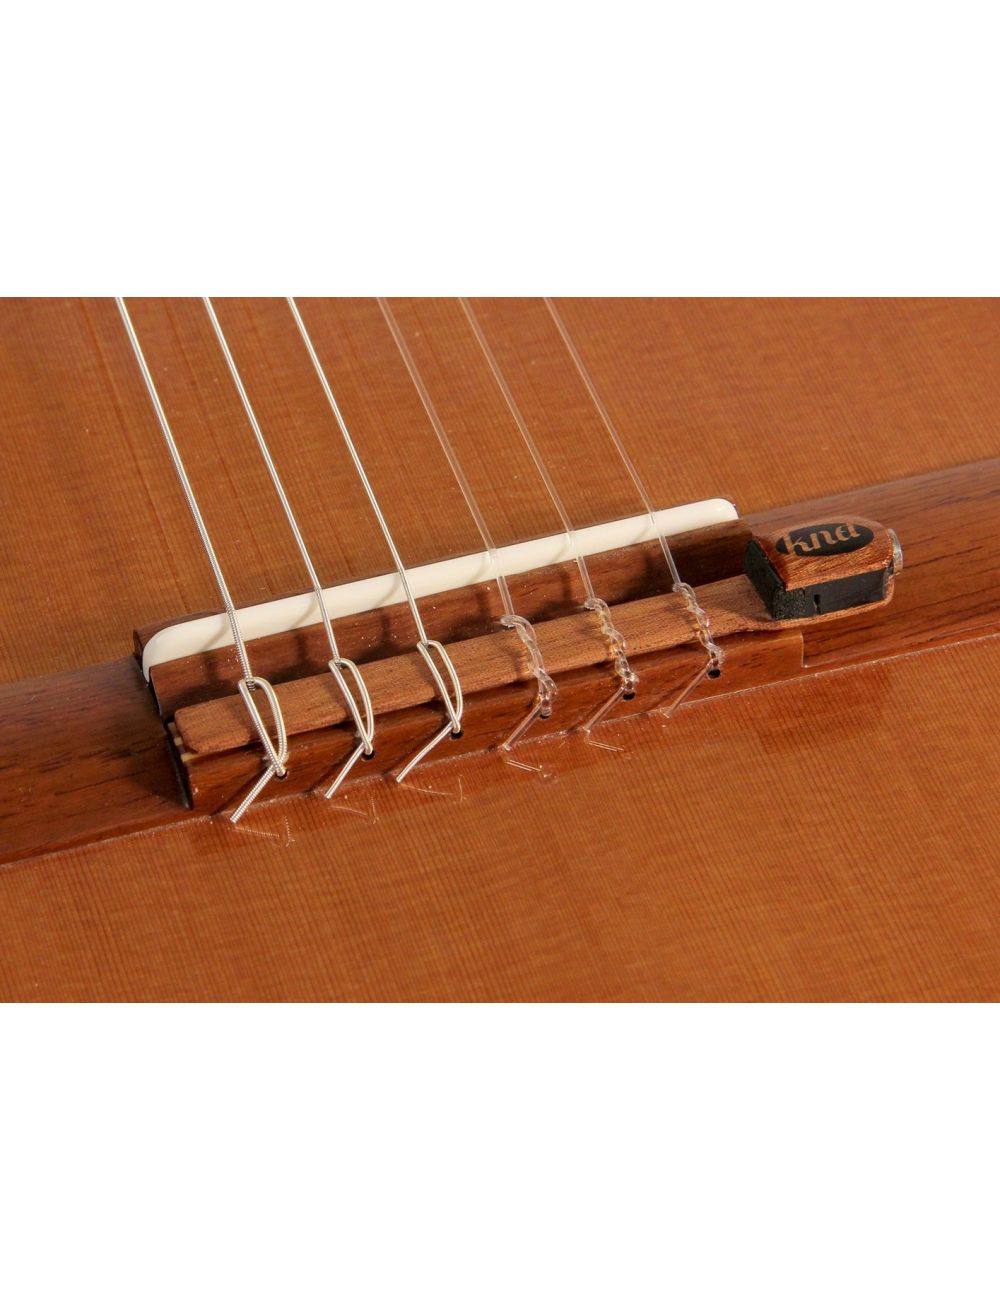 Kremona KNA NG-1 Micro piézo-électrique de guitare classique